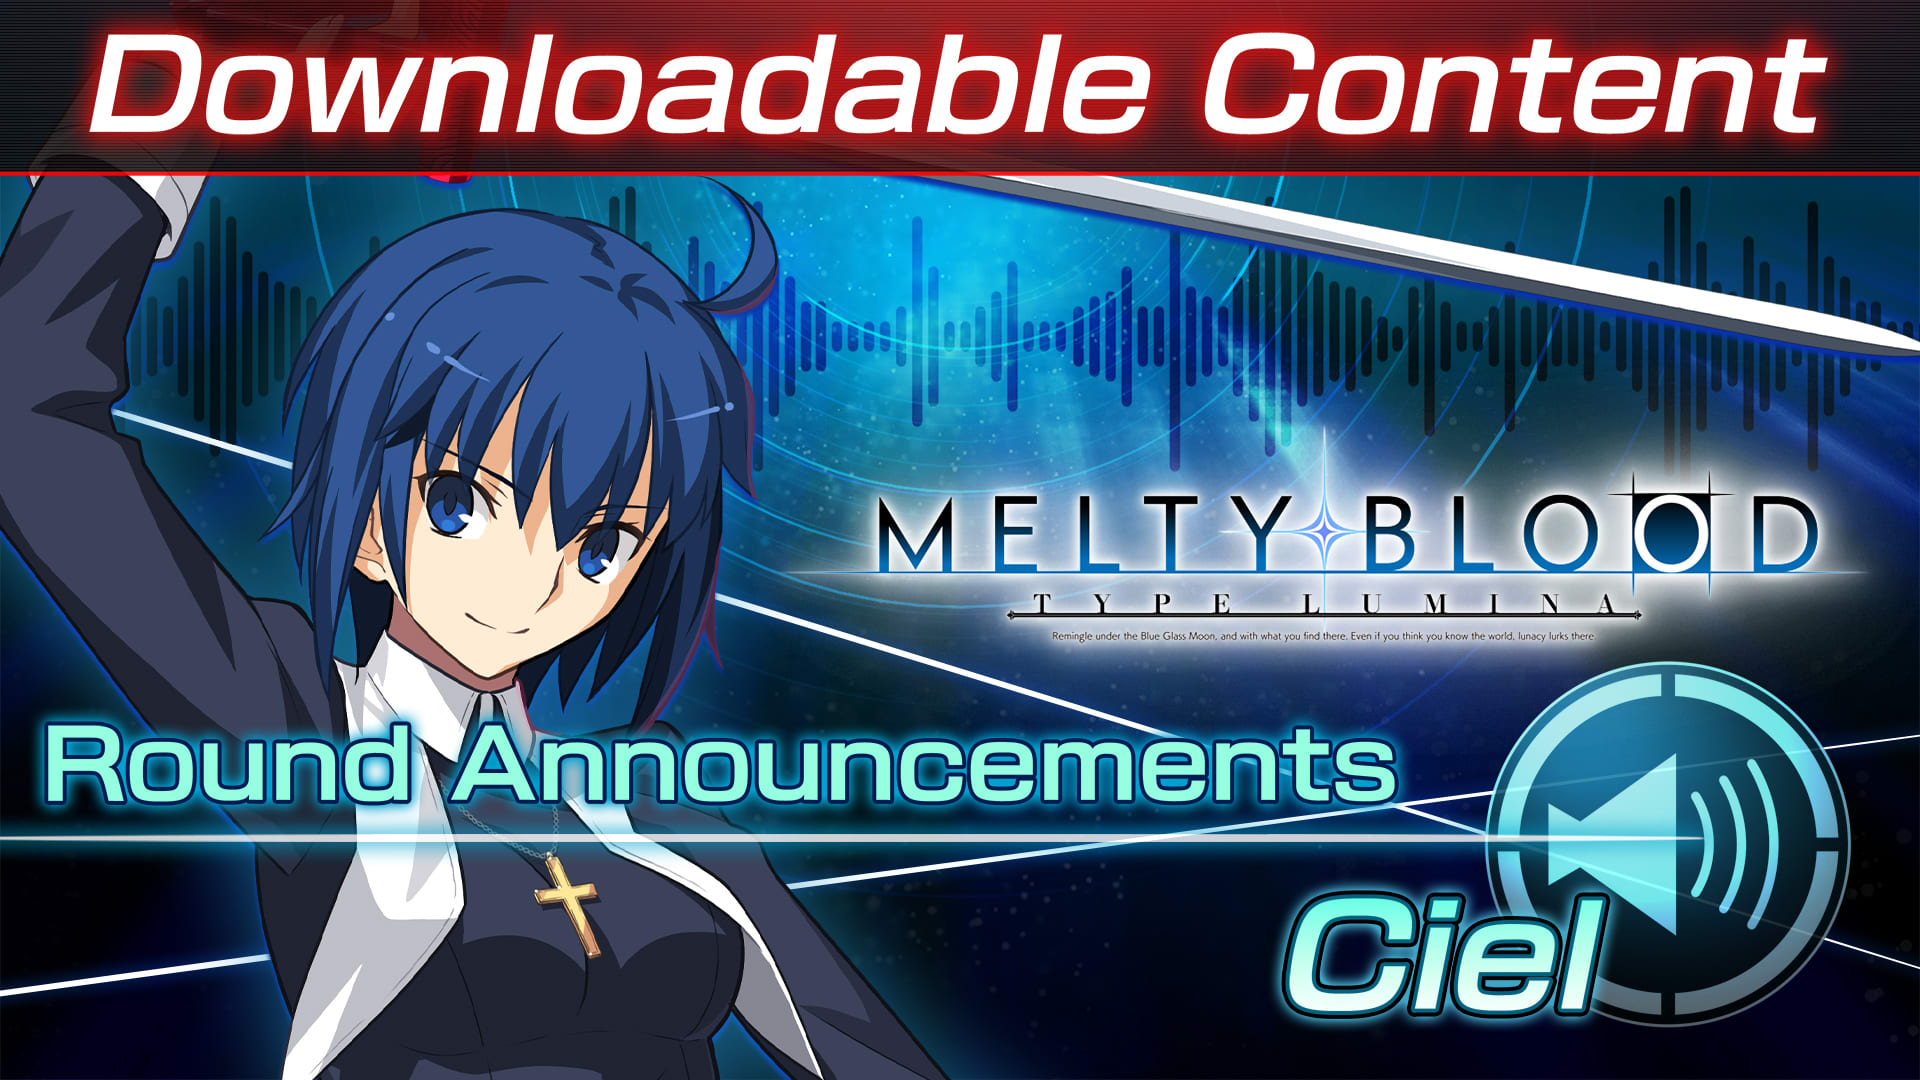 DLC: Ciel Round Announcements